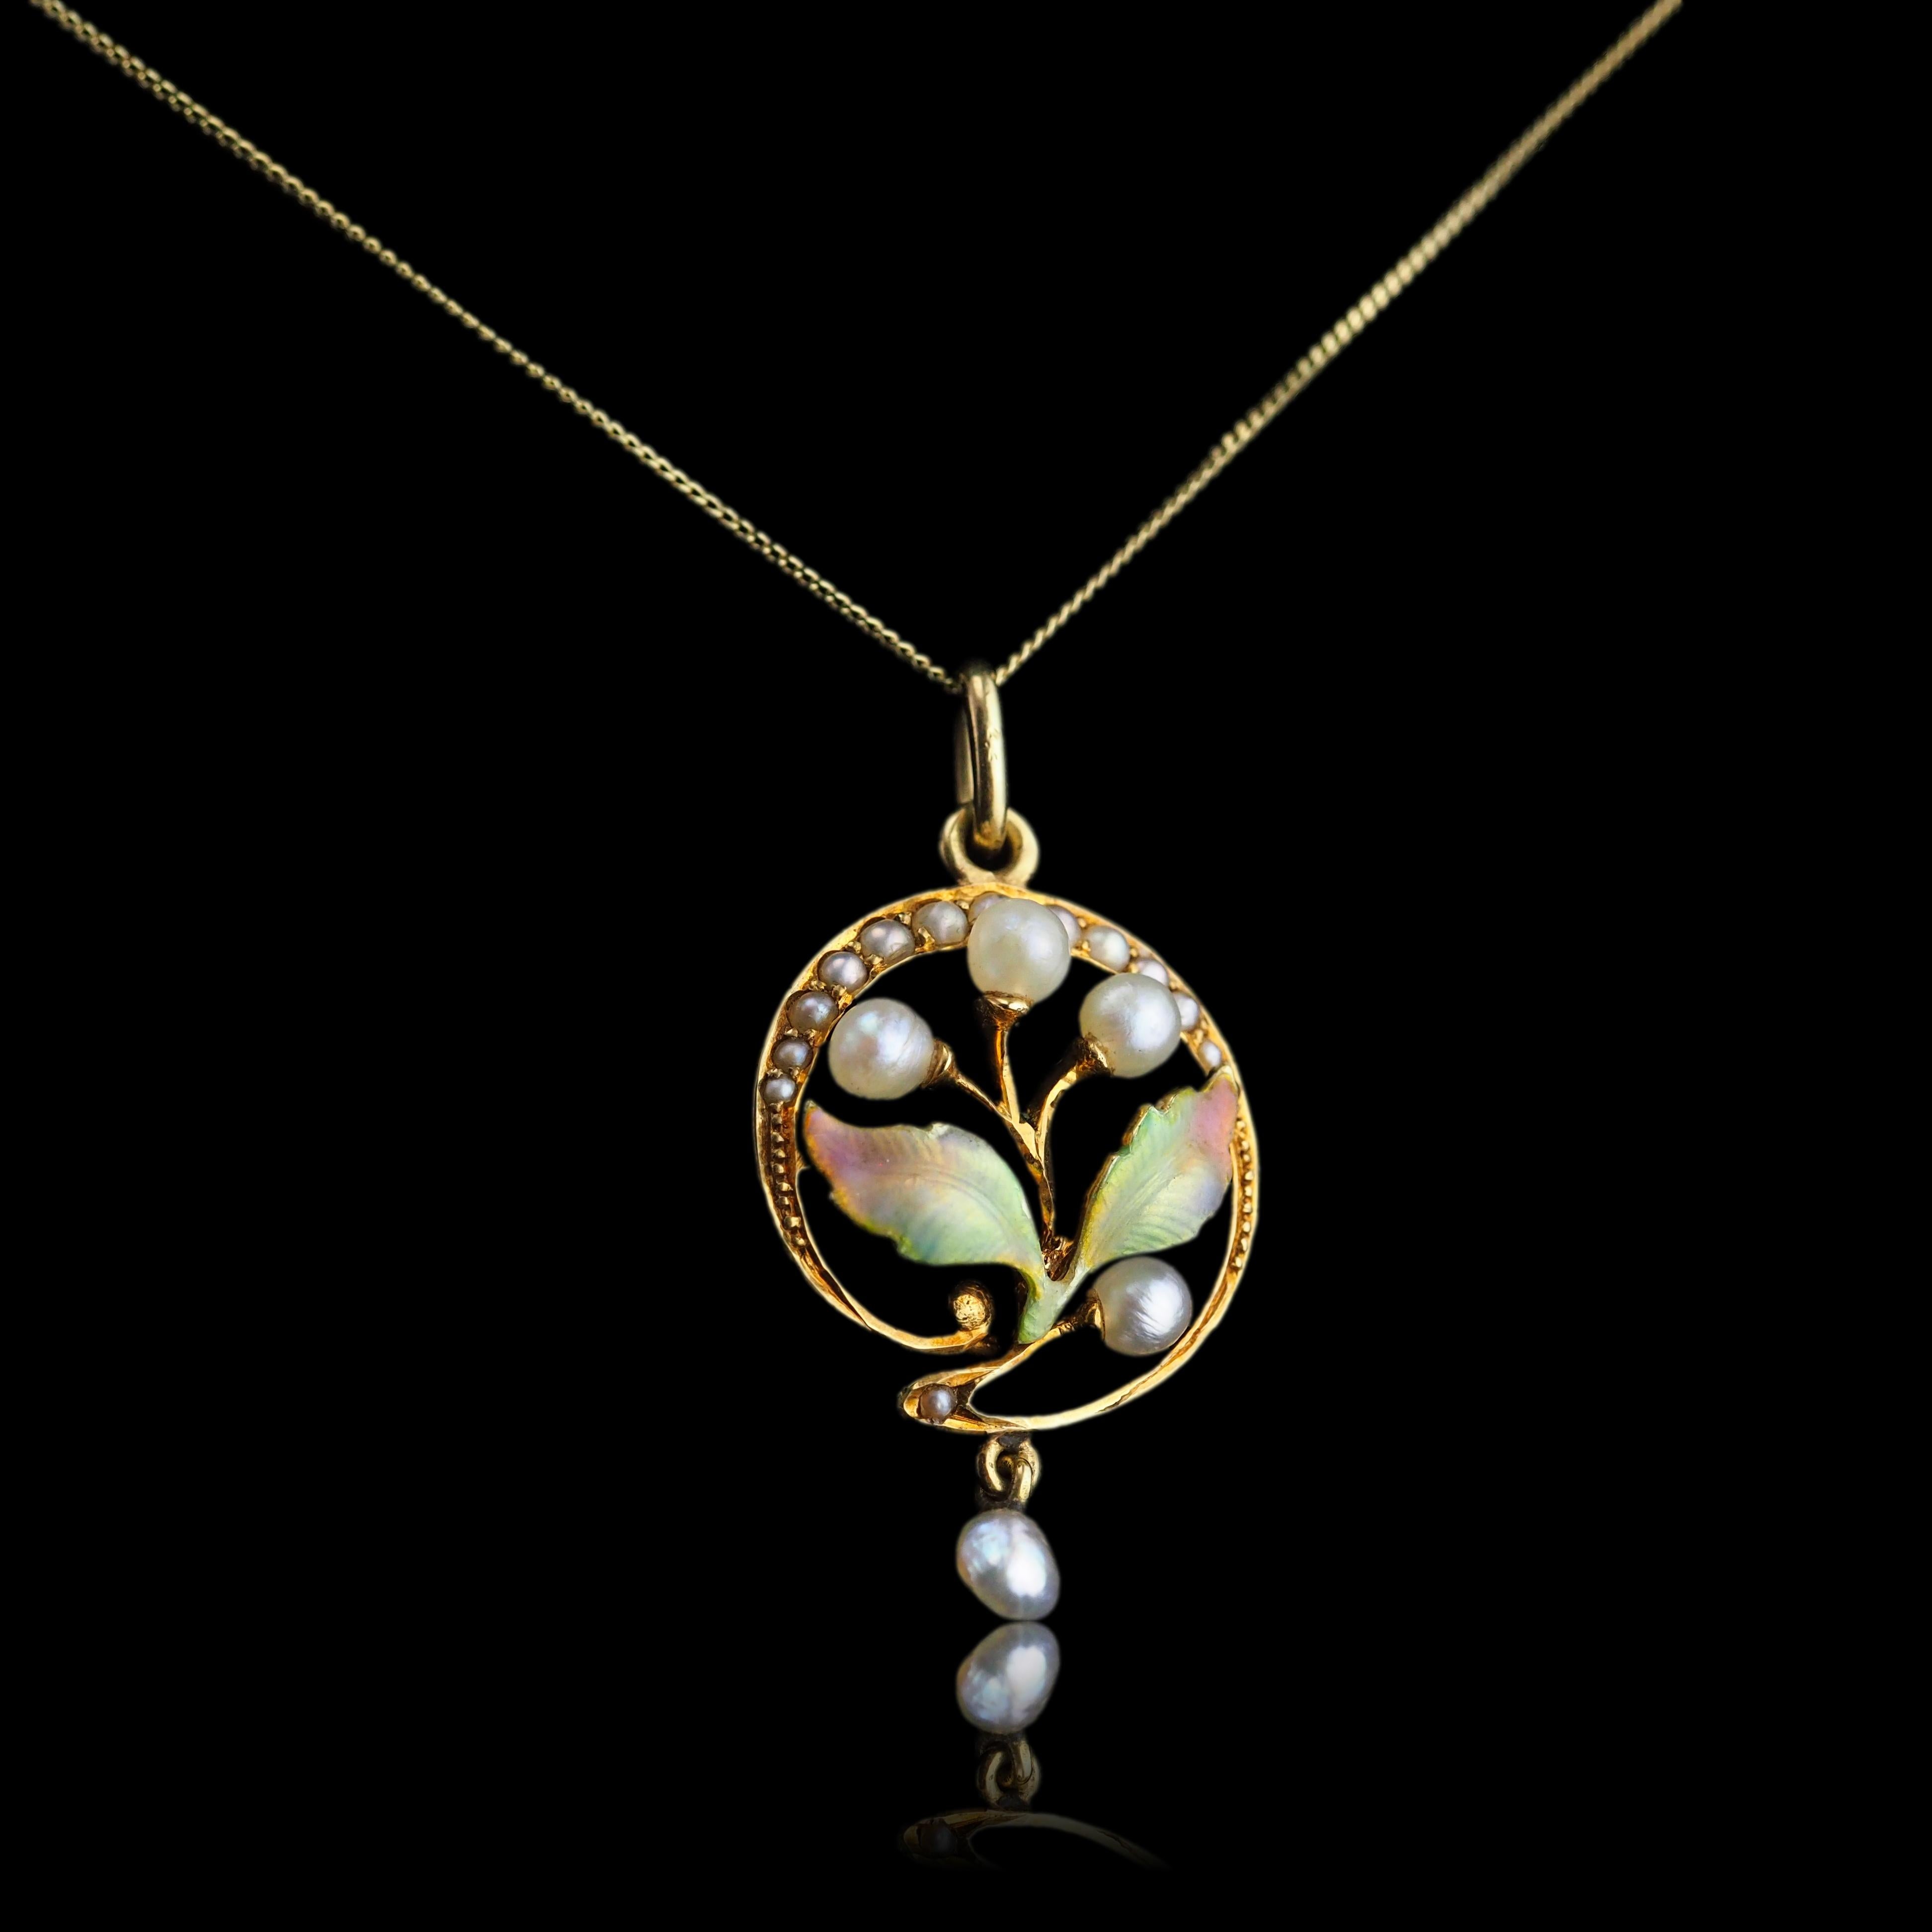 Antique Edwardian Pearl & Enamel Pendant Necklace 15K Gold Art Nouveau c.1910 For Sale 10